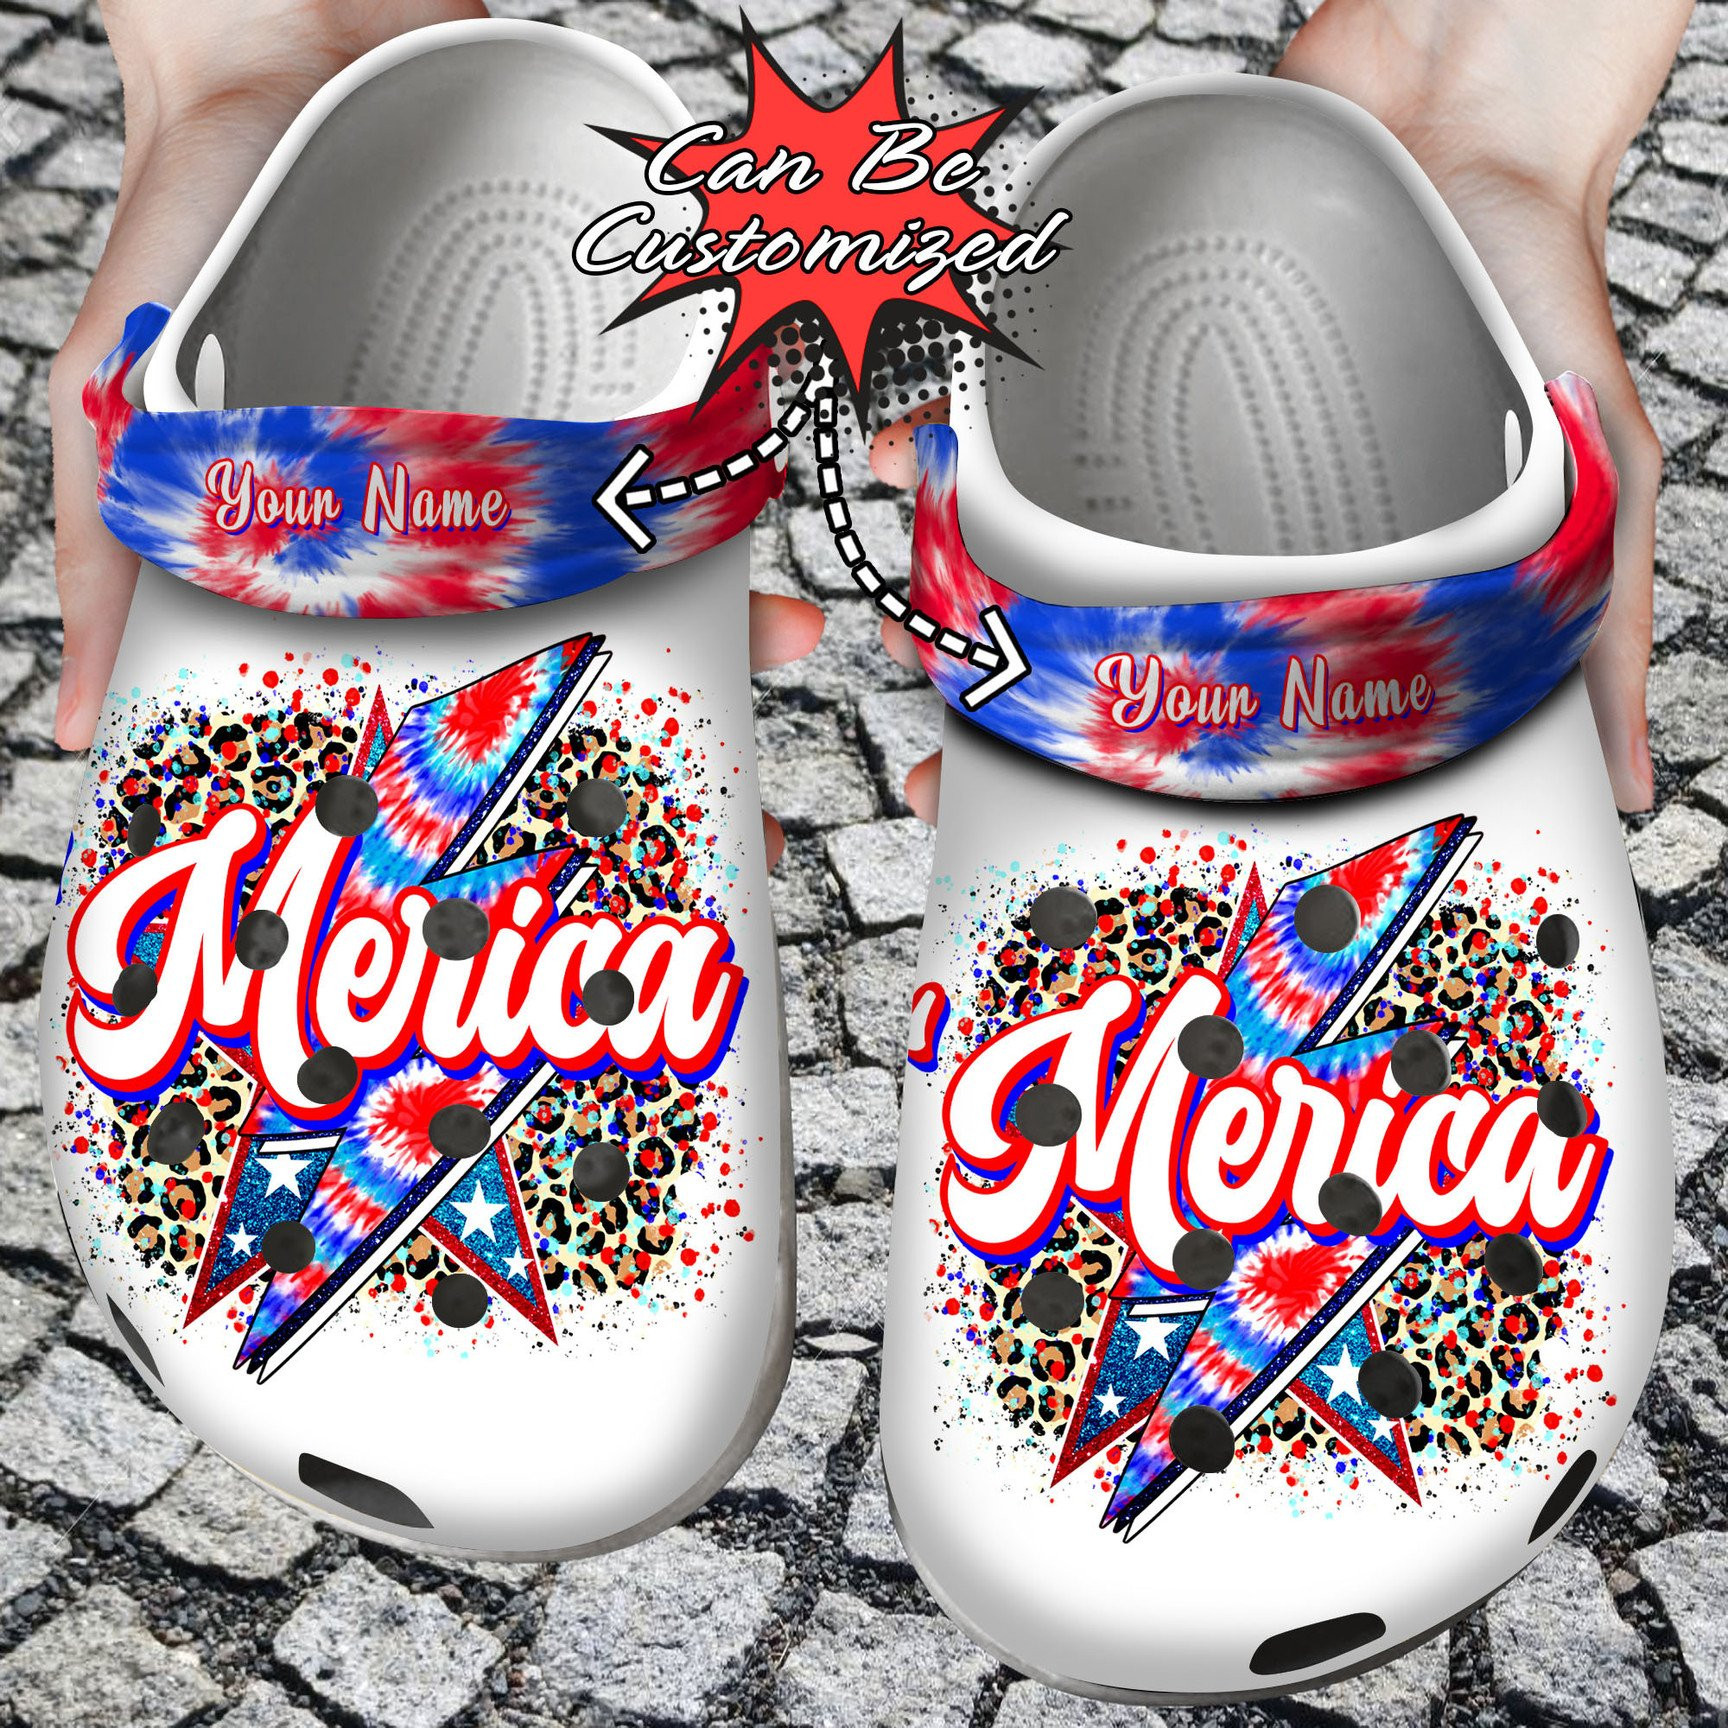 Personalized Merica Patriotic Crocs Clog Shoes Custom Crocs